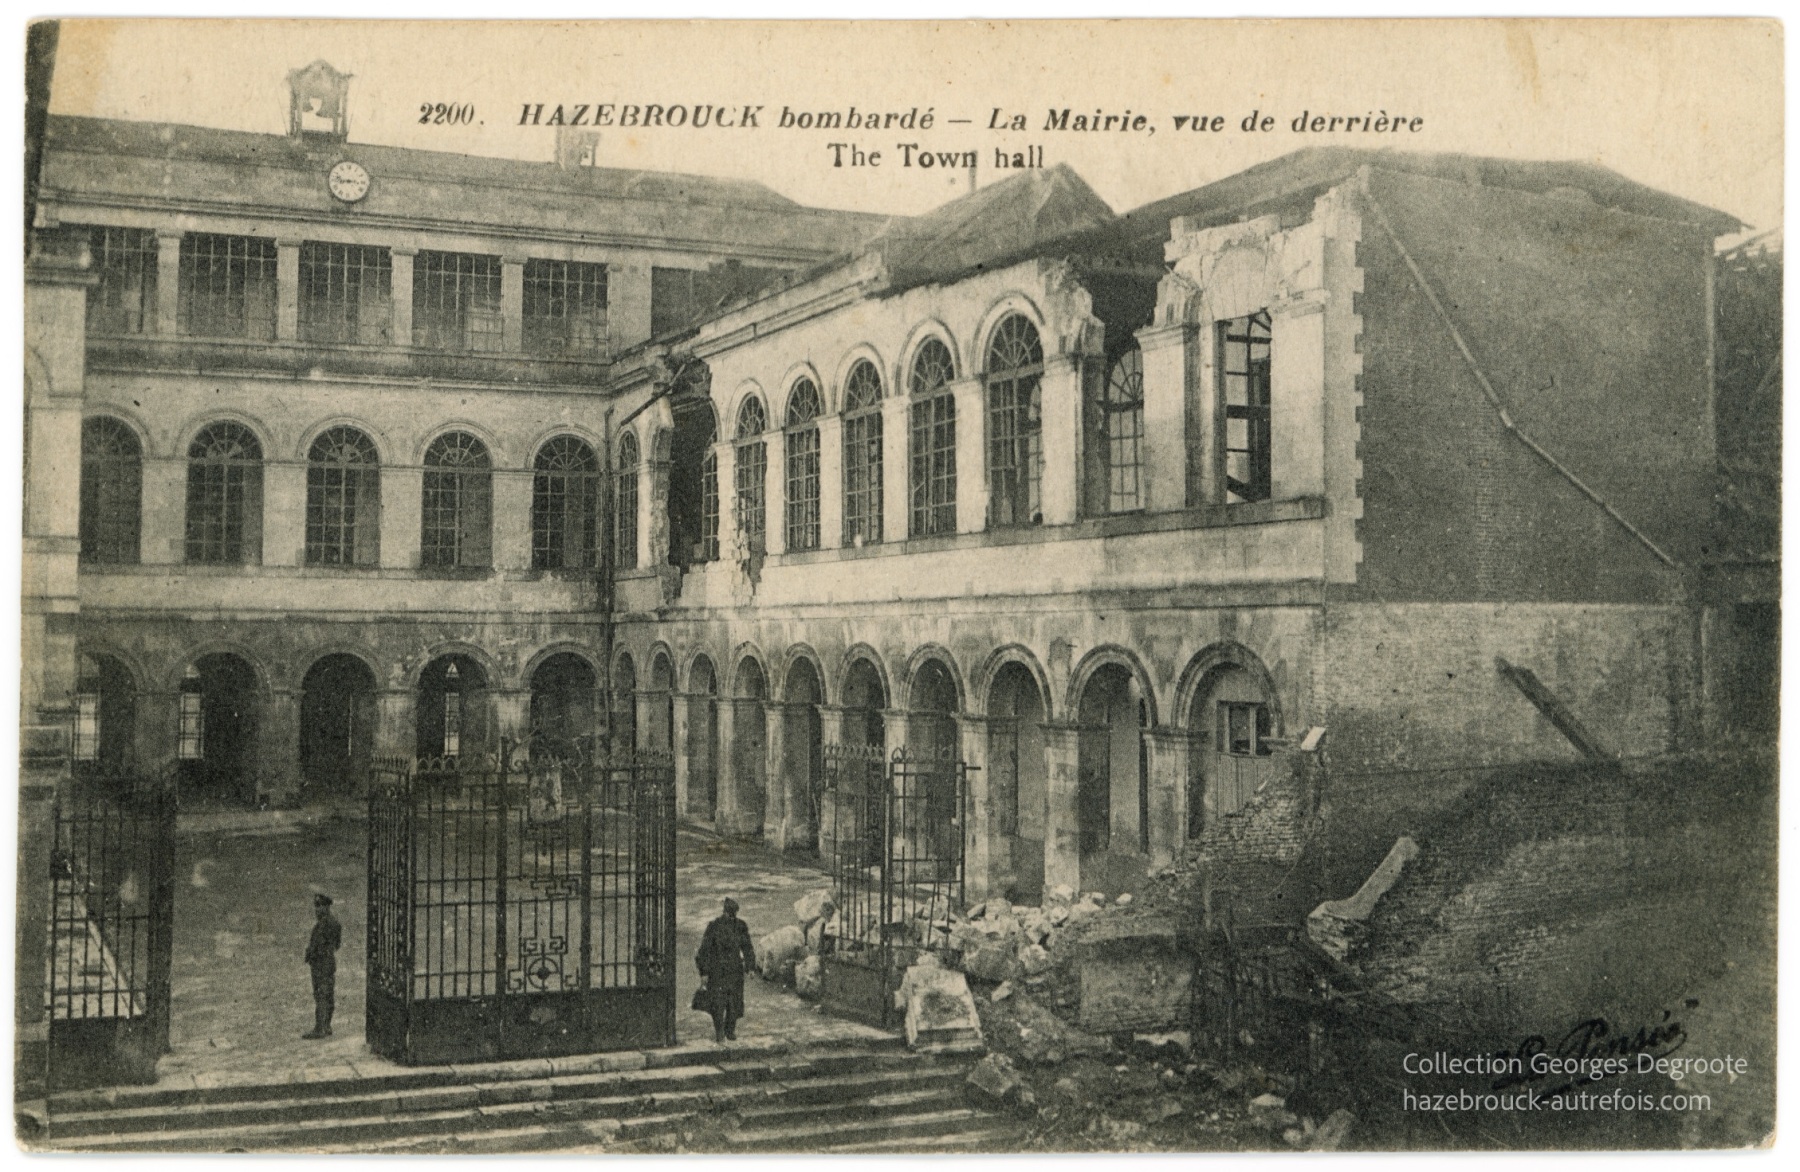 Hazebrouck bombardé - La Mairie, vue de derrière